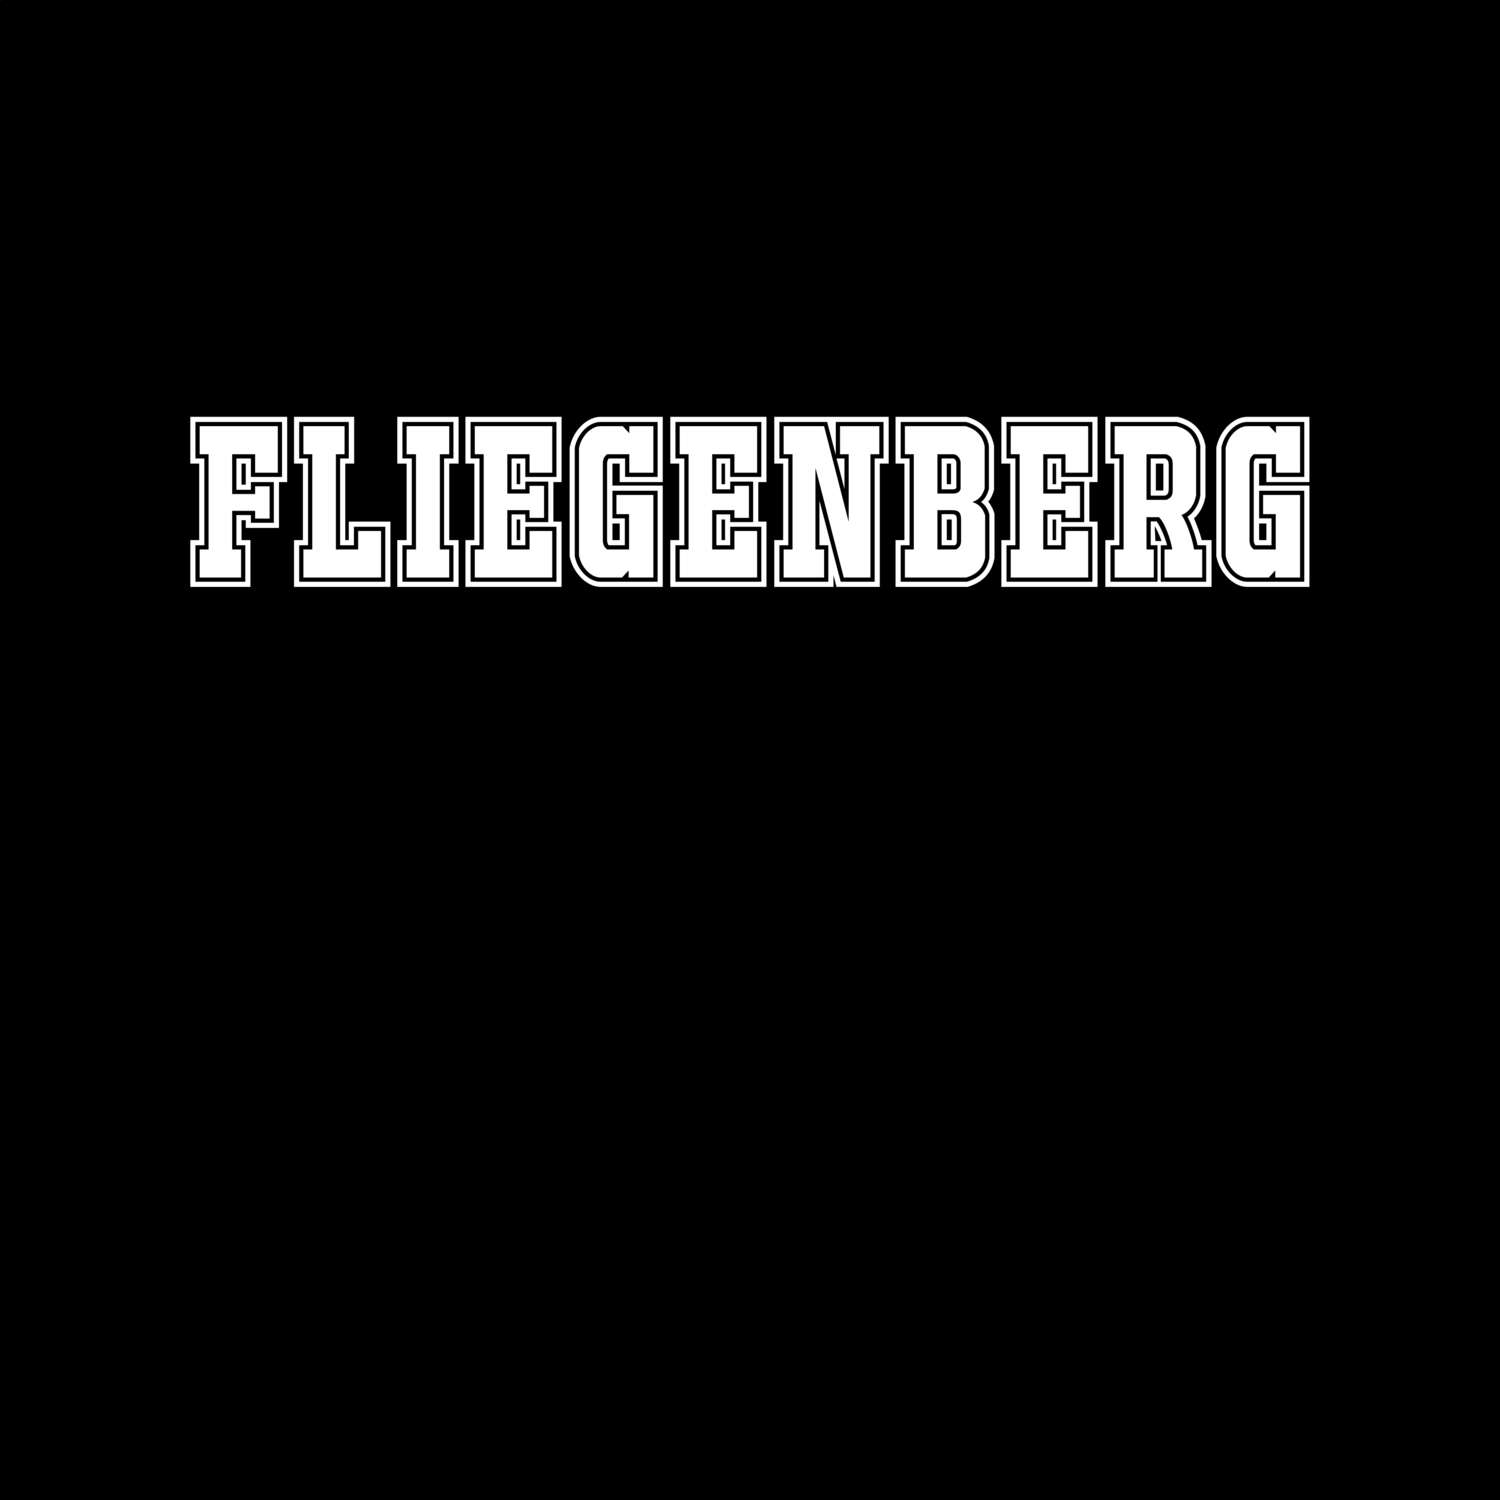 Fliegenberg T-Shirt »Classic«